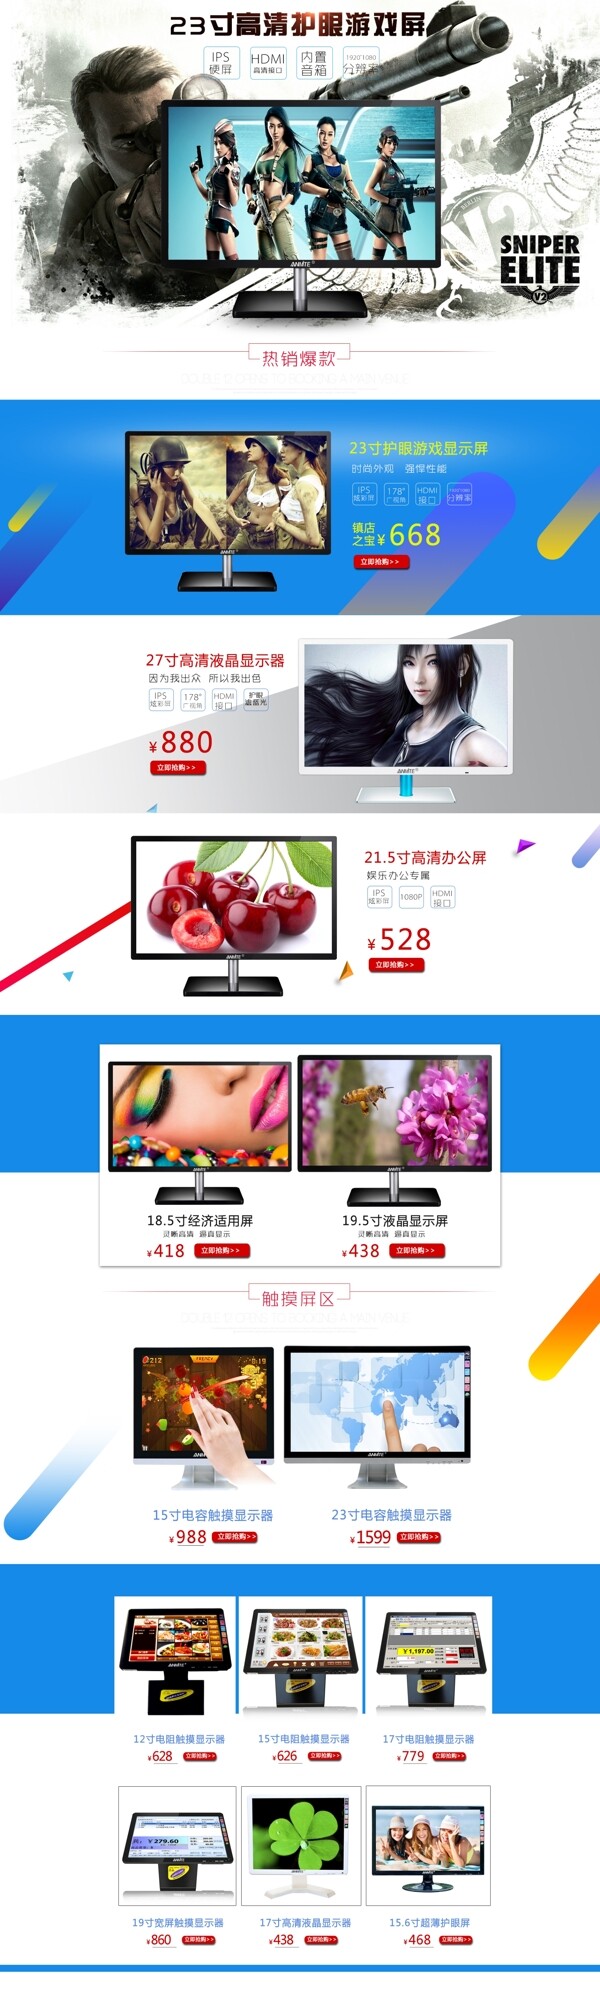 京东淘宝天猫3C数码显示屏首页设计